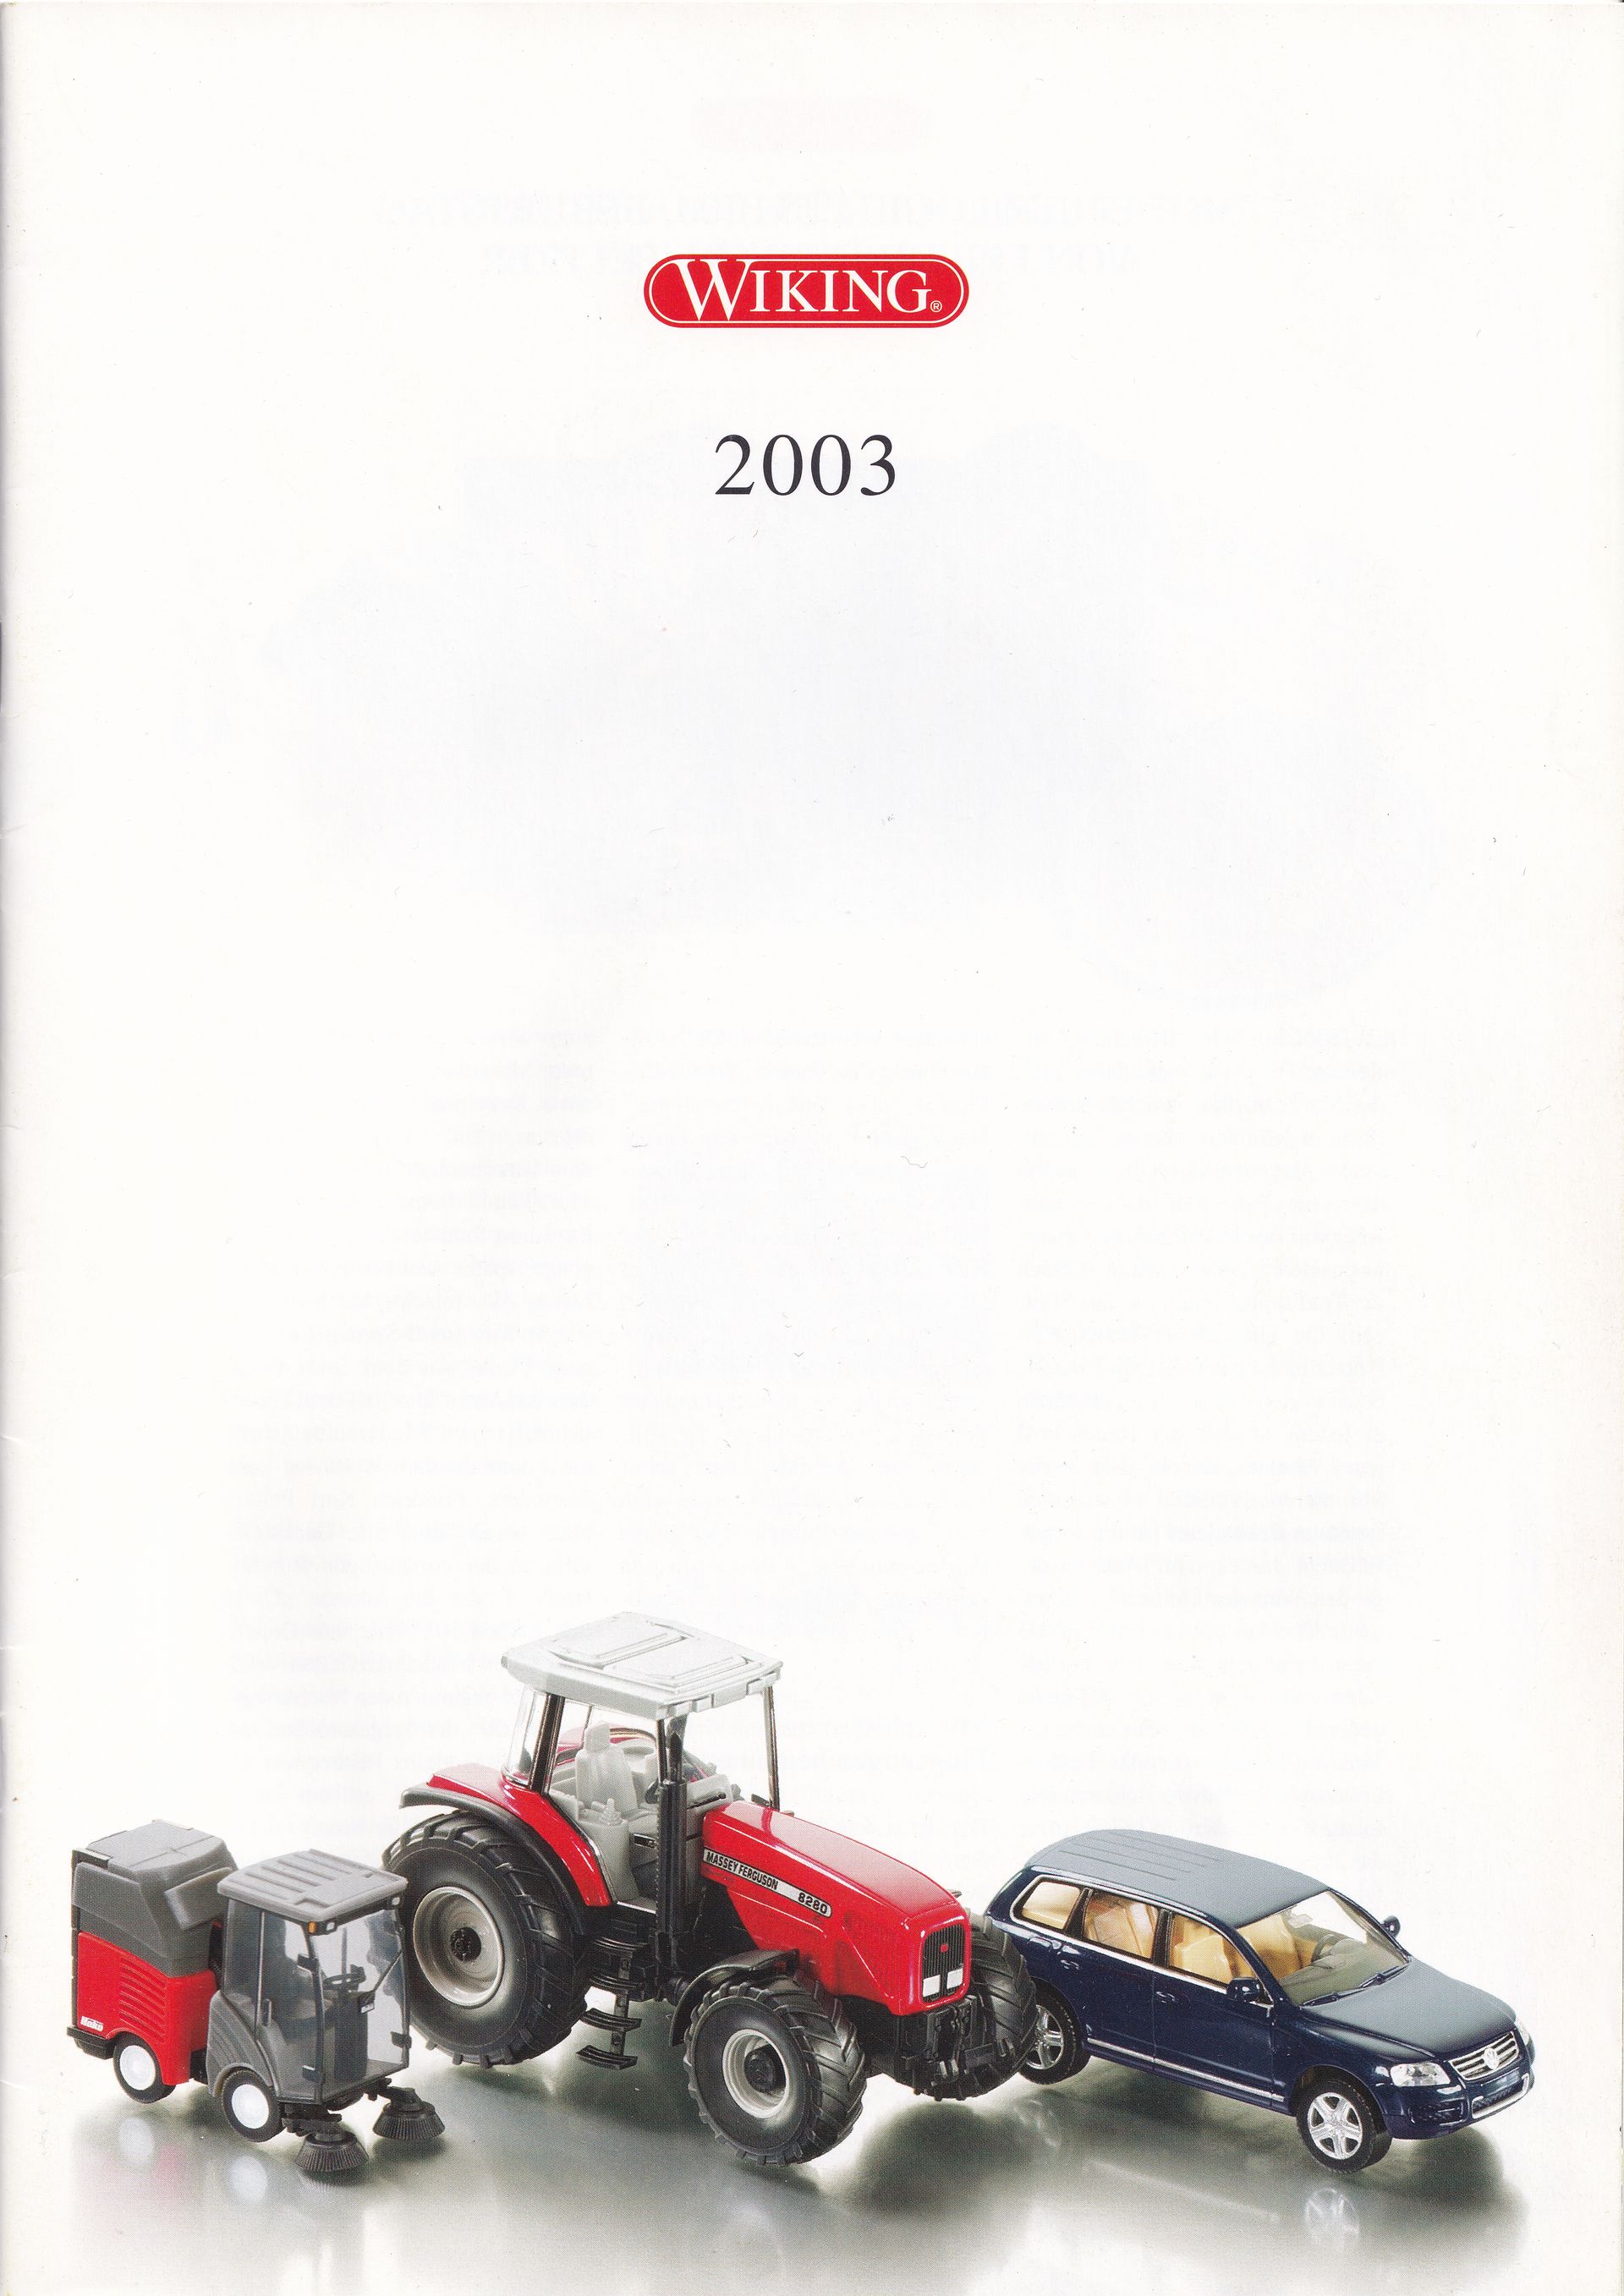 Wiking Catalogue 2003